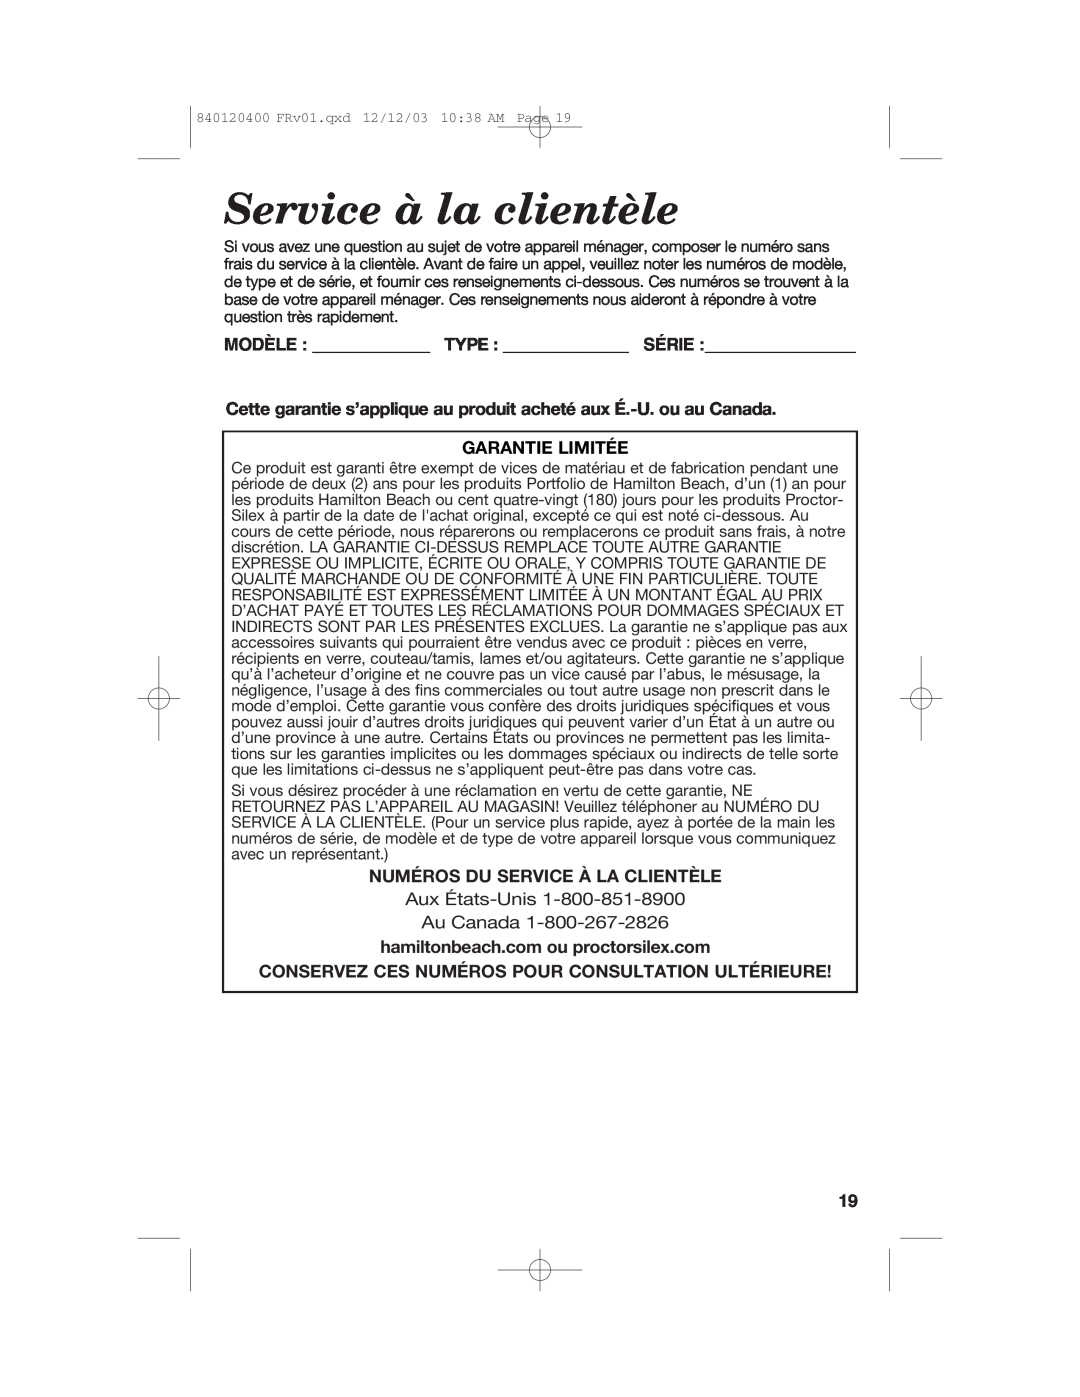 Hamilton Beach 26291 manual Service à la clientèle, Garantie Limitée, Numéros Du Service À La Clientèle 